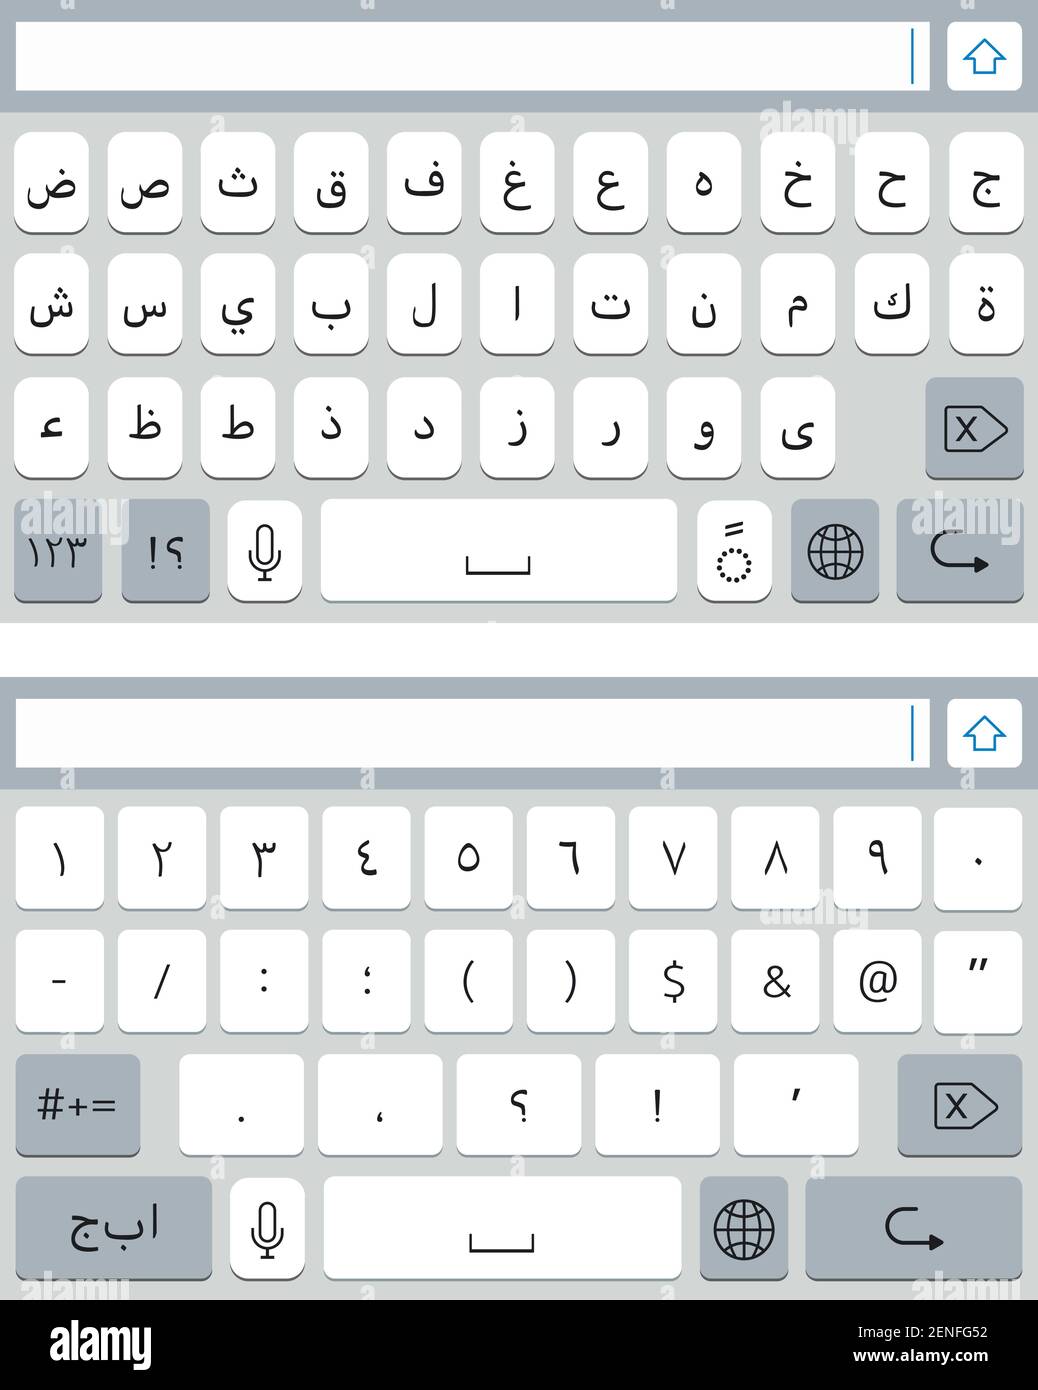 Clavier virtuel arabe pour smartphone. Maquette du clavier du téléphone portable, touches alphabétiques et chiffres Illustration de Vecteur